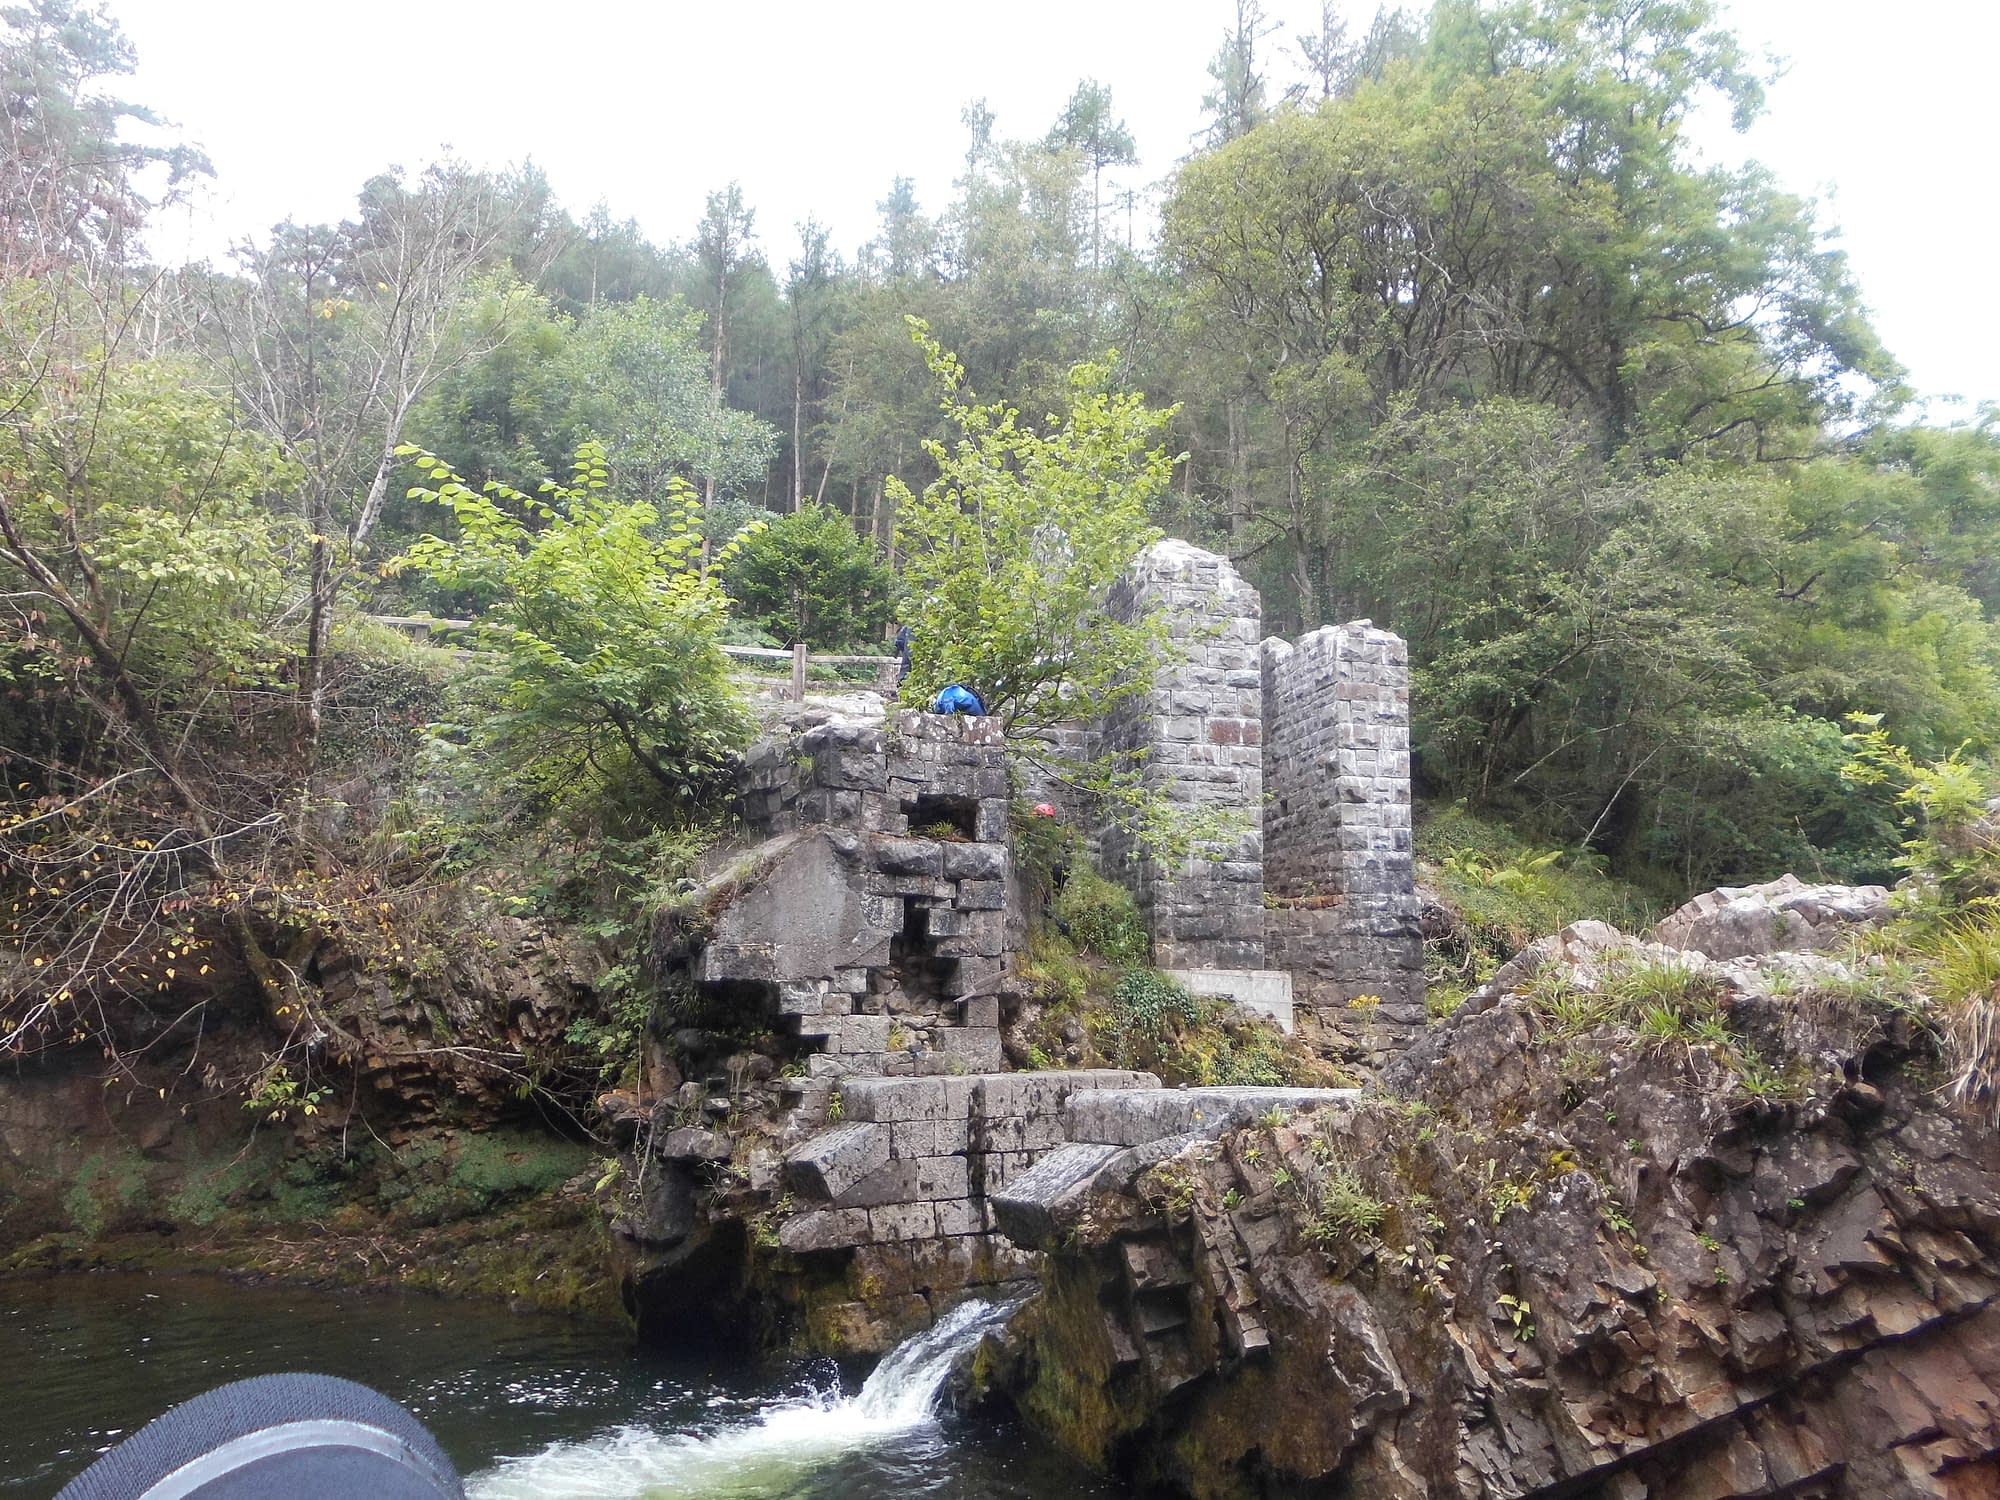 An old bridge on the River Sychryd (Afon Sychryd)